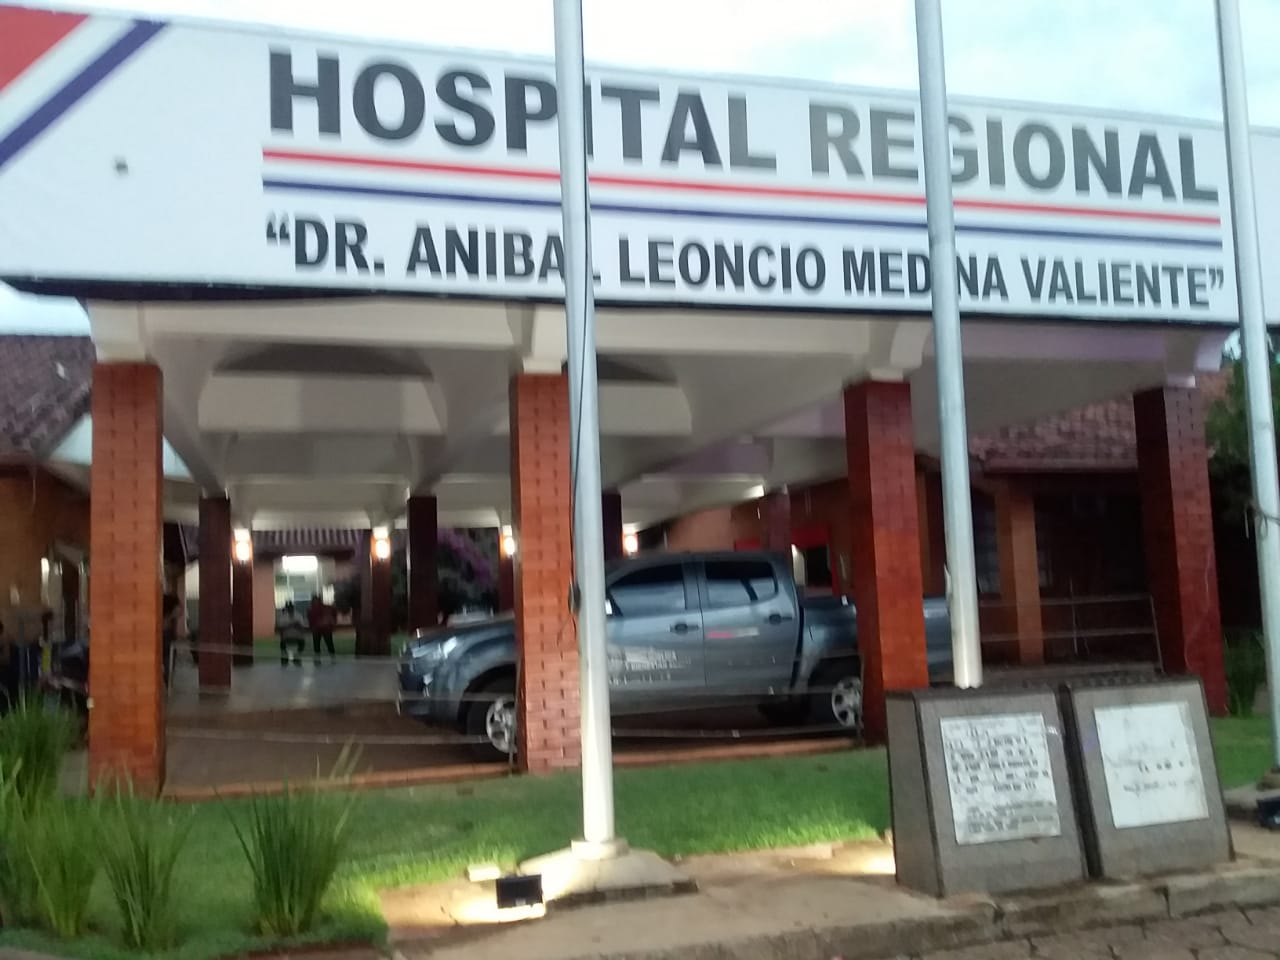 Veterinario secuestrado y luego liberado se halla internado en una UTI del Hospital Regional